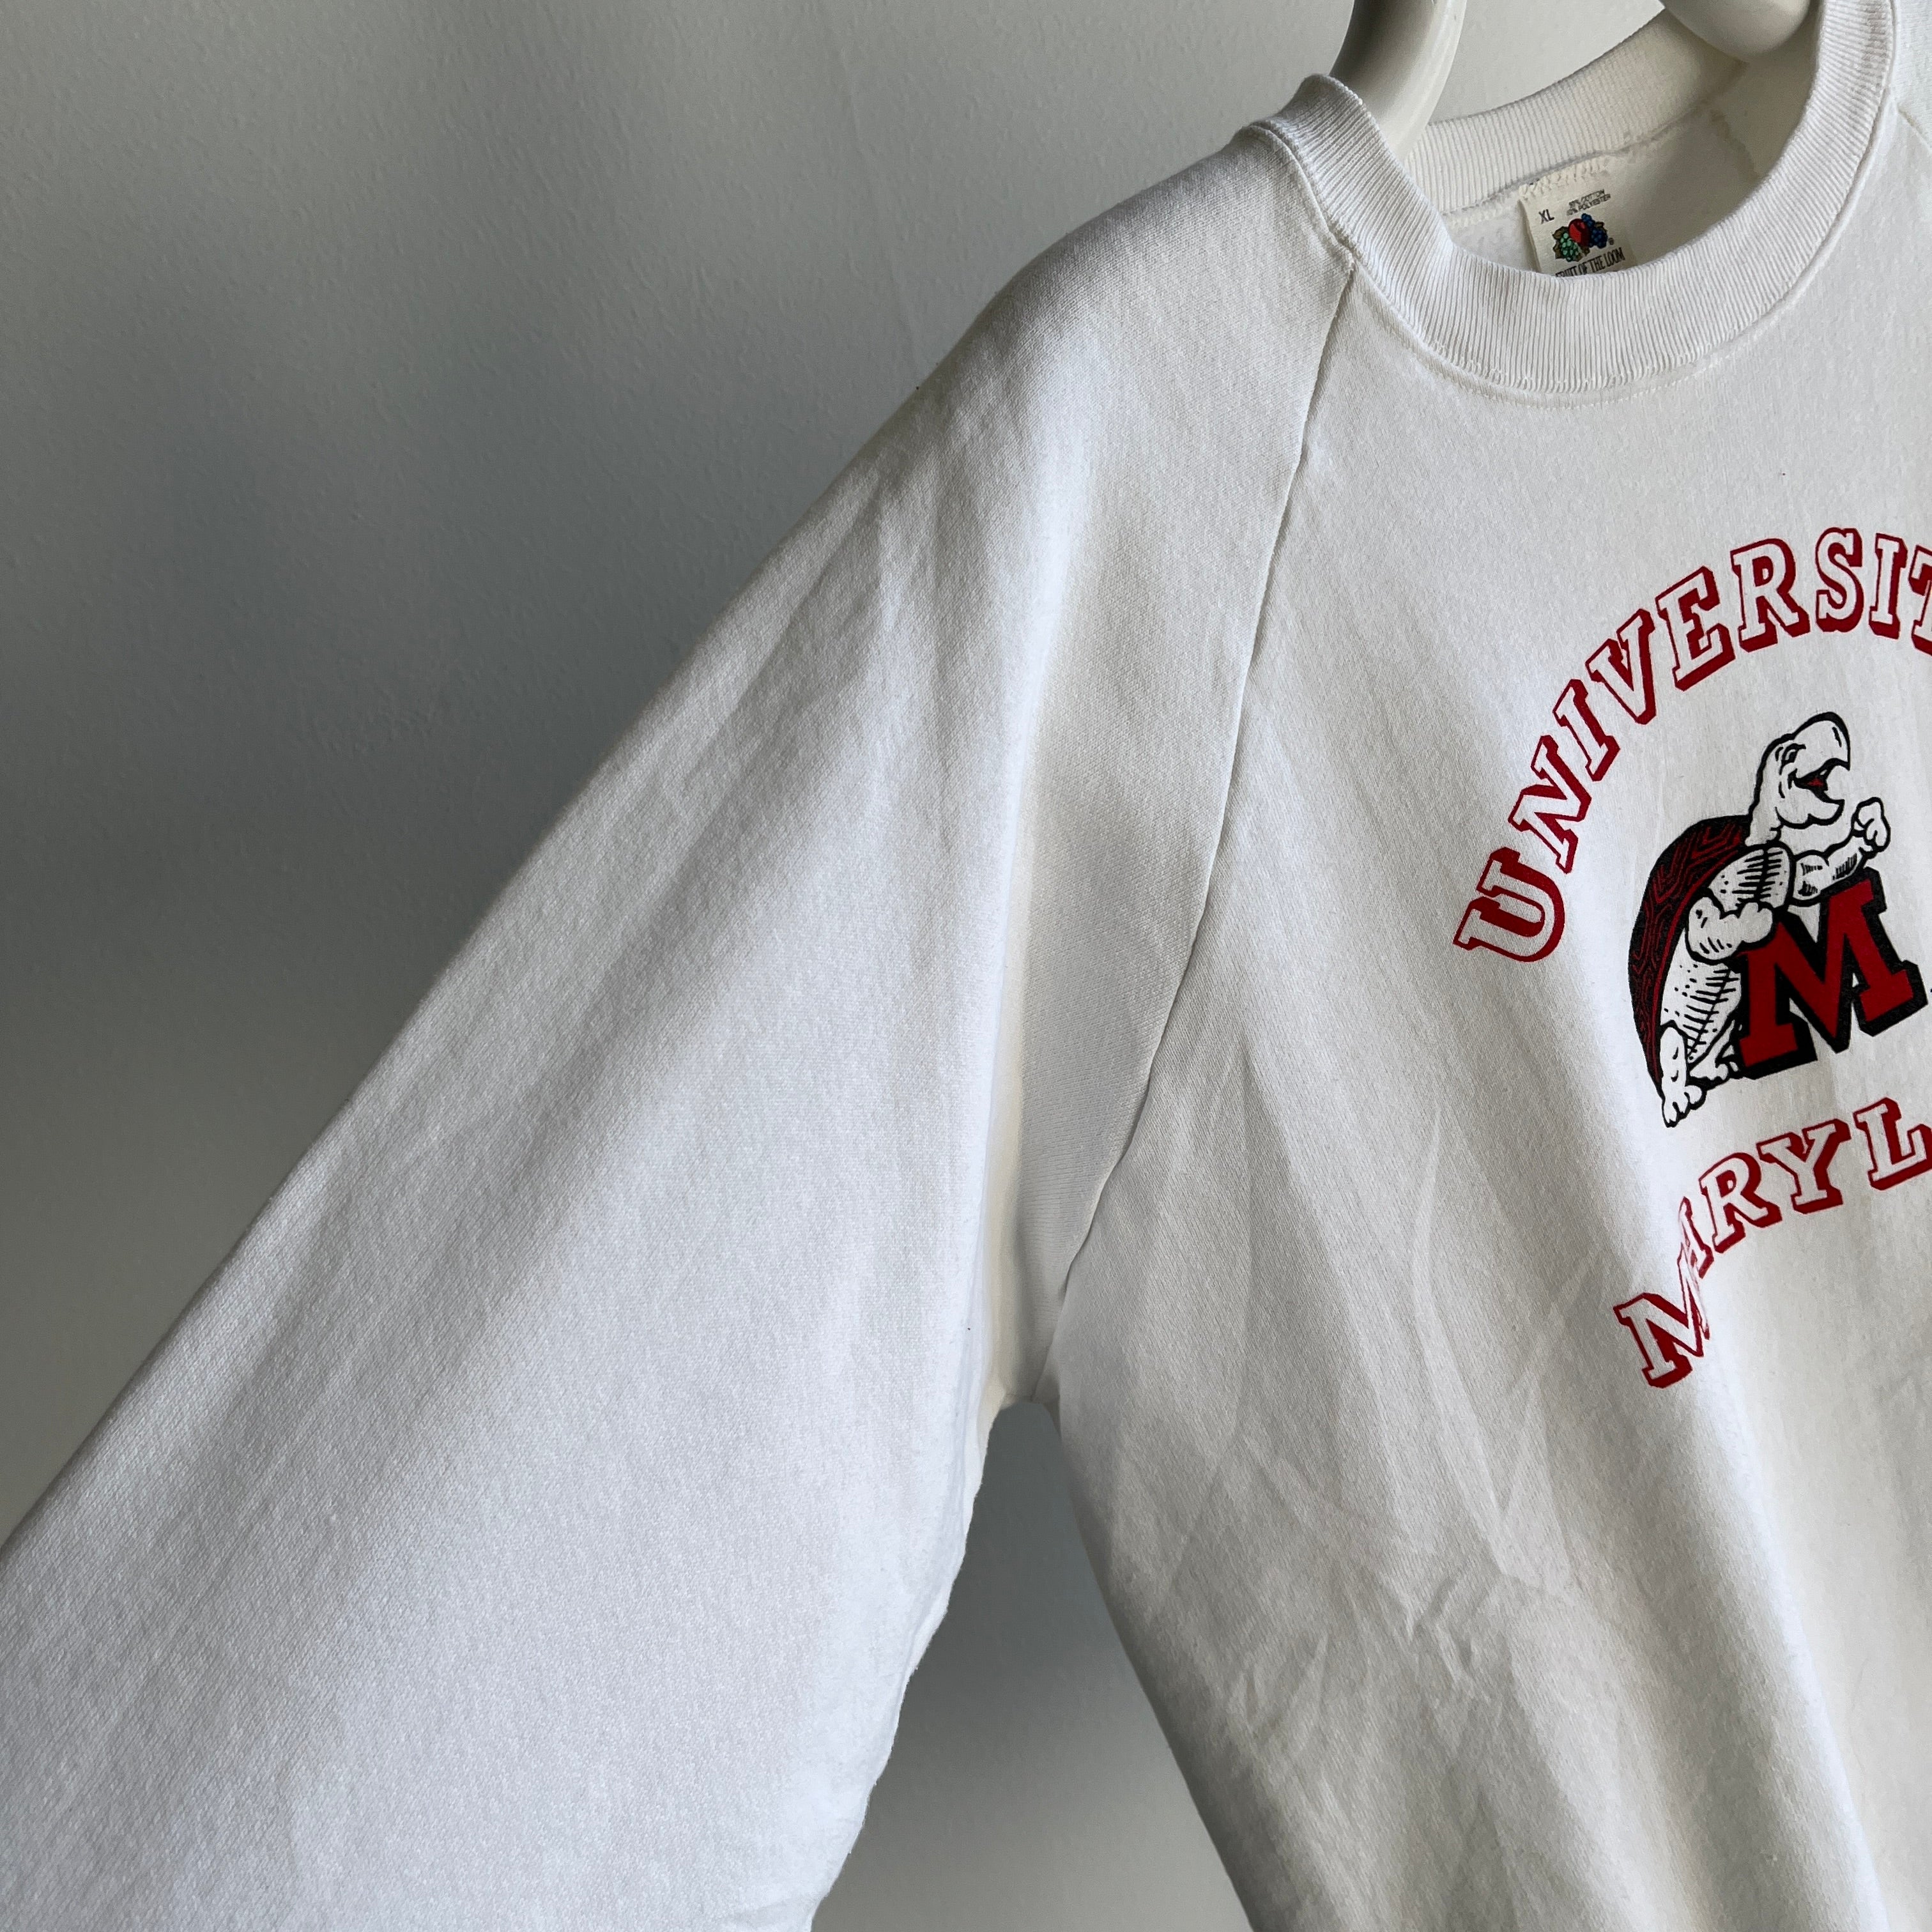 1980s University of Maryland Sweatshirt - Barely Worn